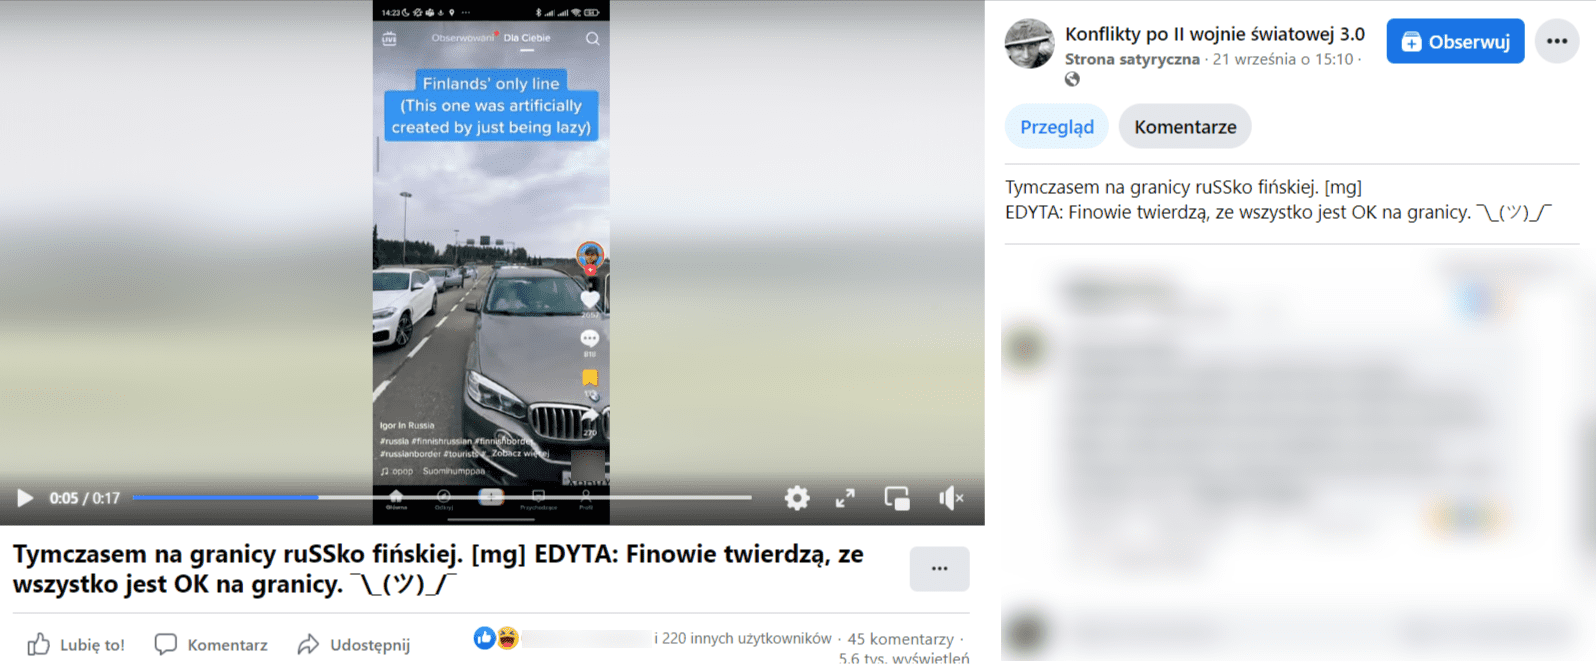 Zrzut ekranu wpisu na Facebooku, w którym podano, że nagranie odnosi się do sytuacji na granicy fińsko-rosyjskiej. 